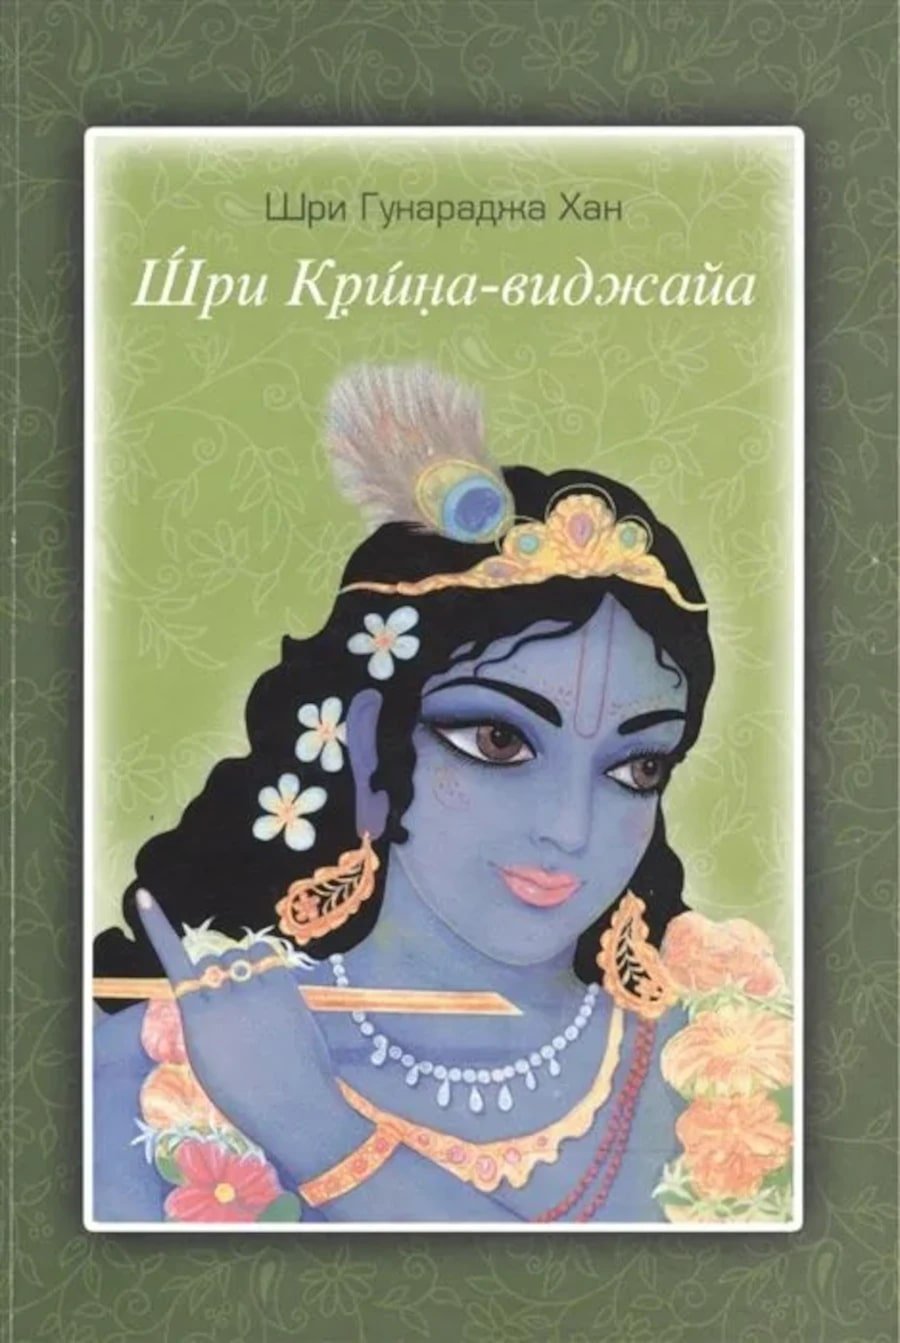 Купить книгу Шри Кришна-виджайа Шри Гунараджа Хан в интернет-магазине Ариаварта